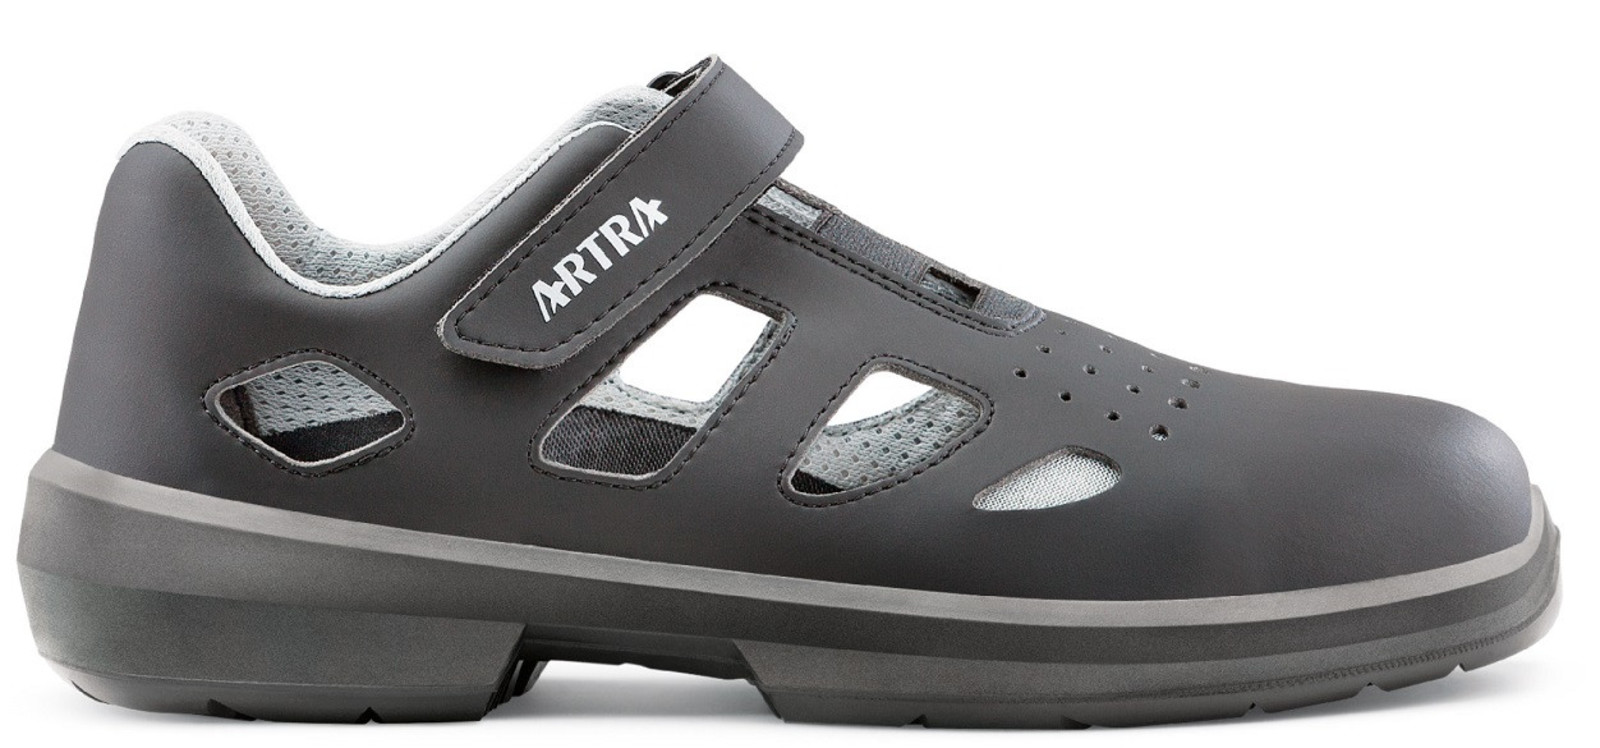 Bezpečnostné sandále Artra Ario 801 661460 S1P - veľkosť: 45, farba: čierna